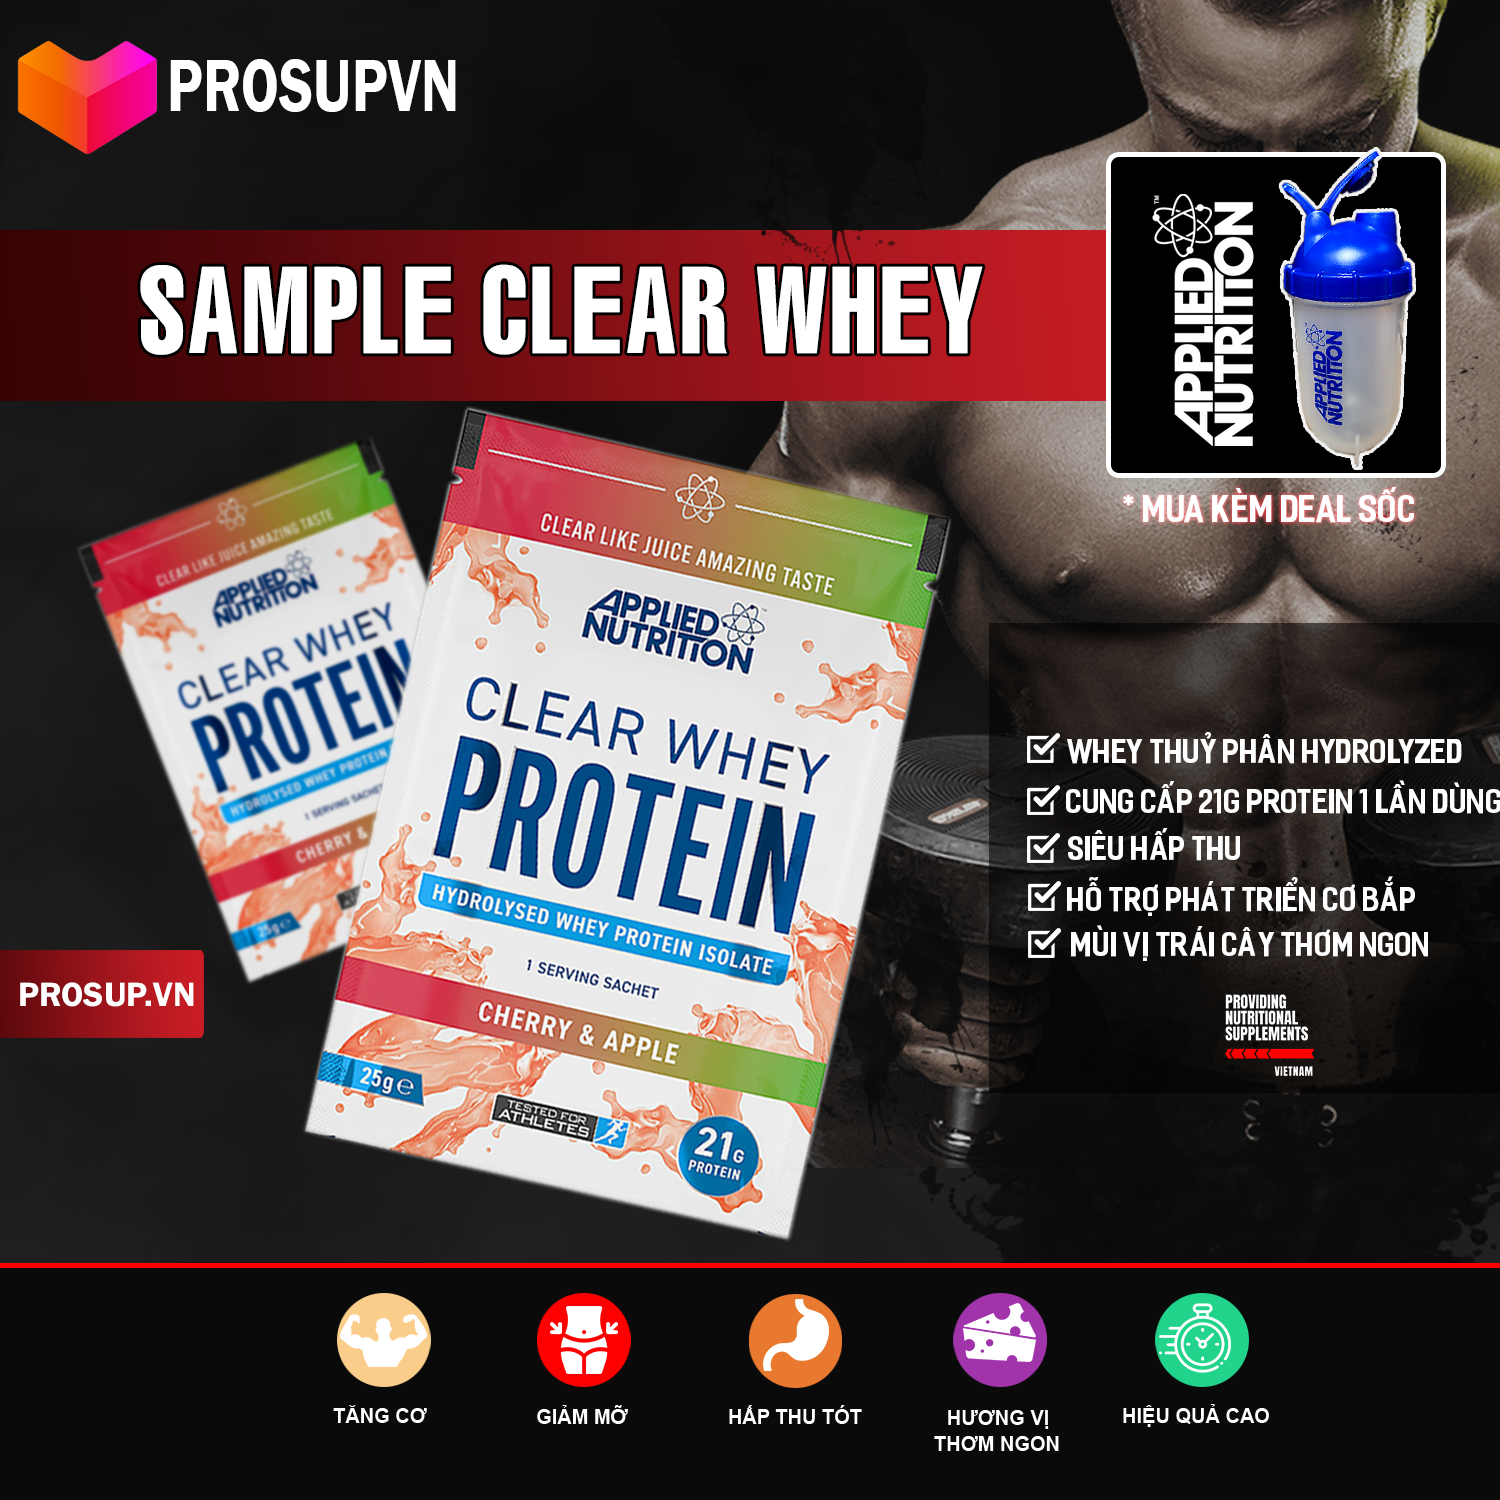 Clear Whey ( Sample 1 lần dùng ) - Applied Nutrition - Whey protein cao cấp [ Hydrolize ] Sữa tăng cơ, tăng cân hiệu quả thumbnail